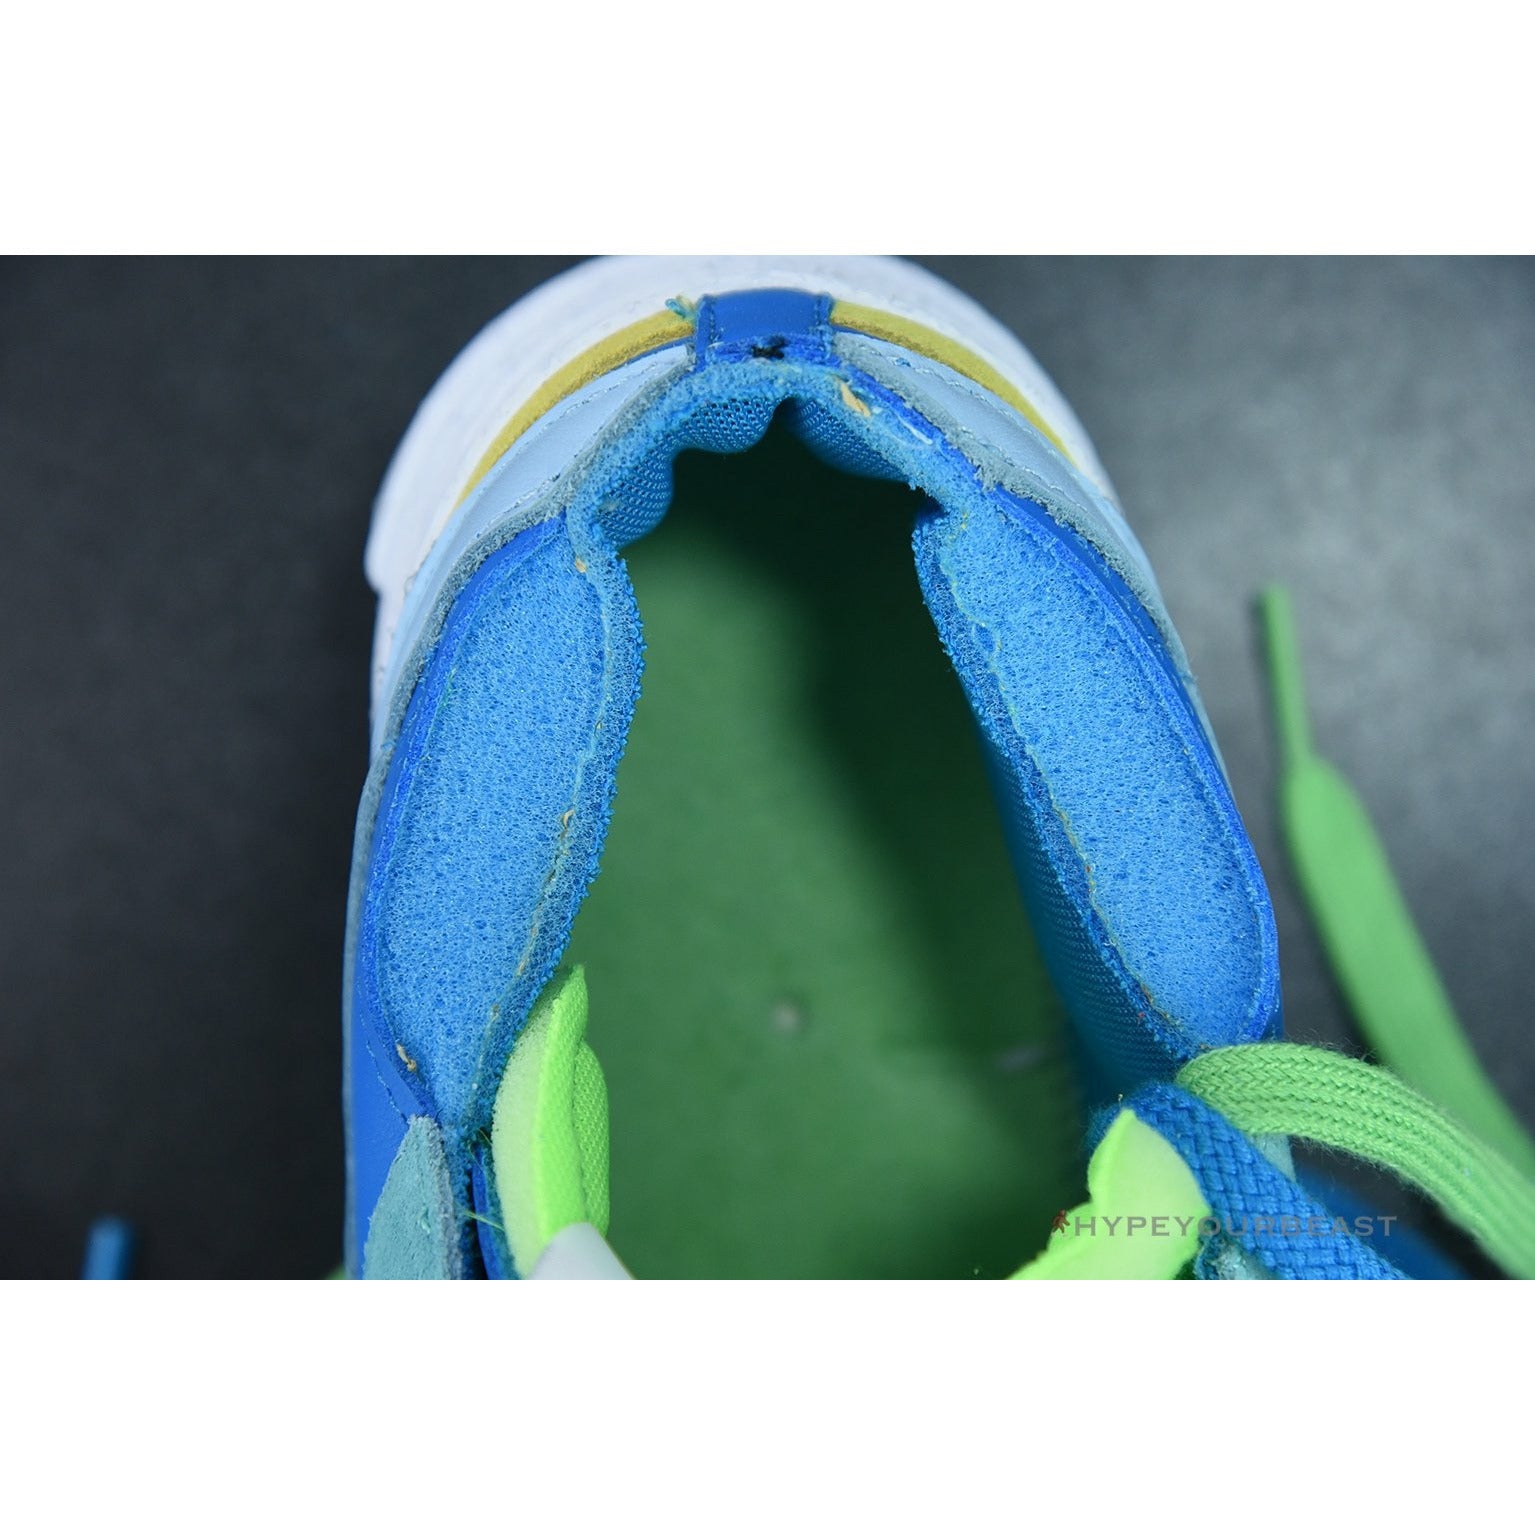 Nike Blazer Low Sacai KAWS Blue